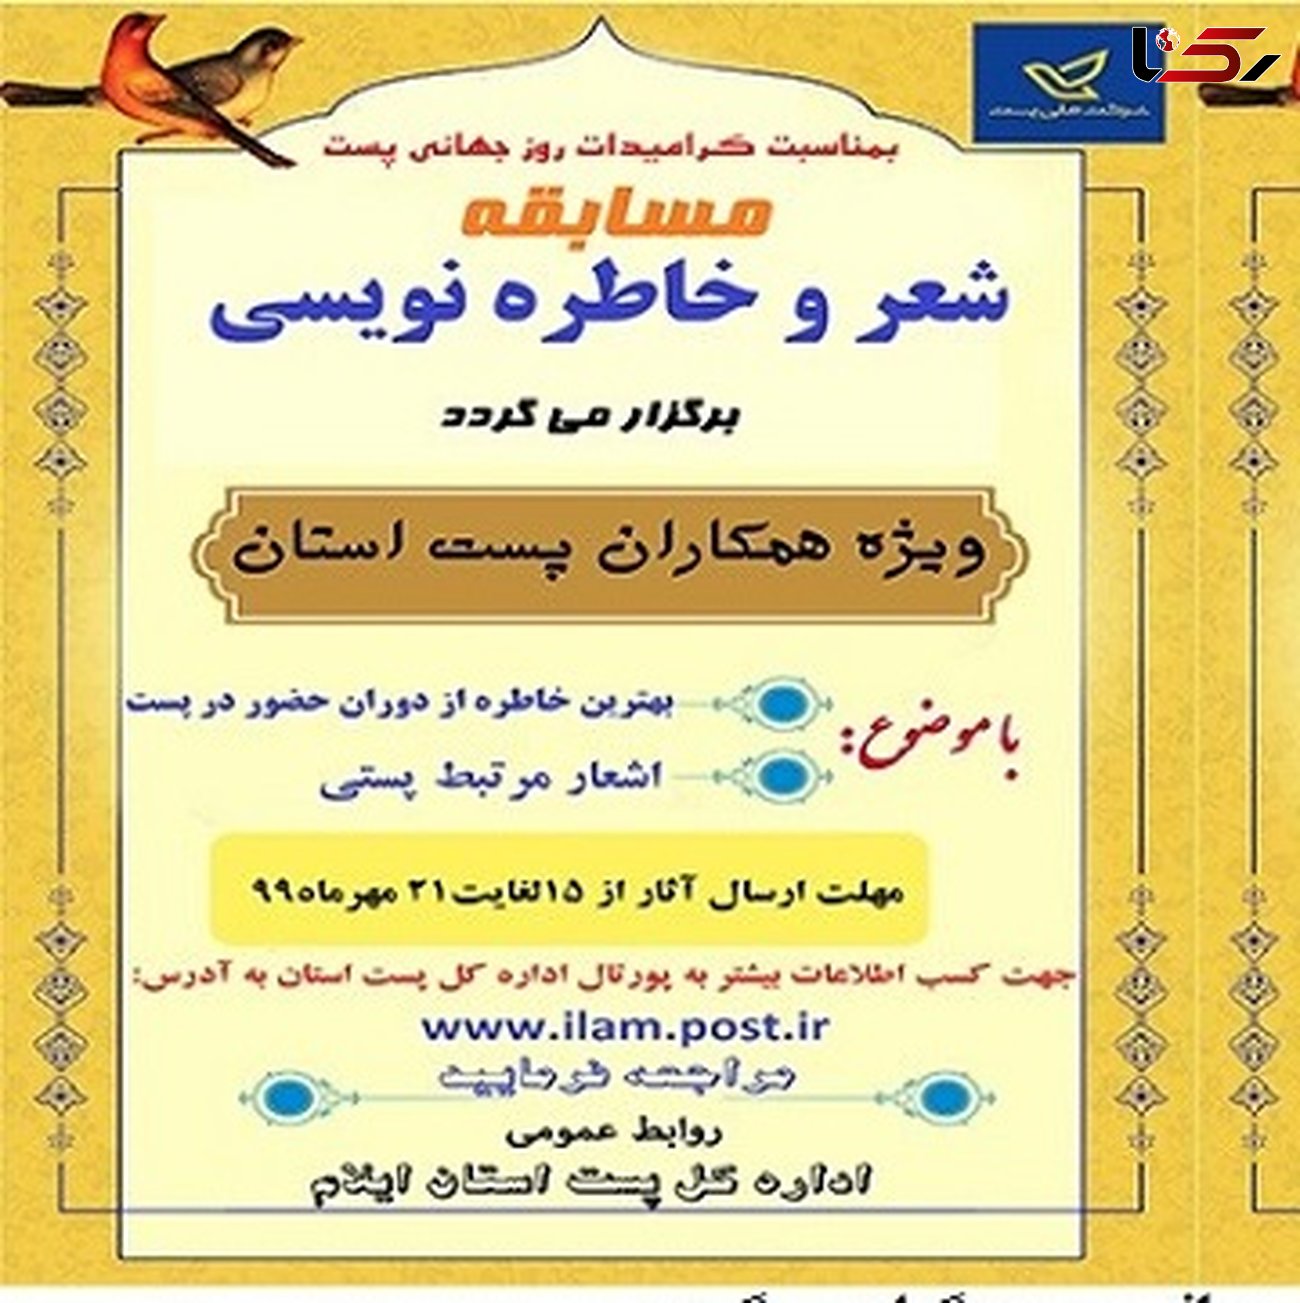 برگزاری مسابقه شعر و خاطره نویسی با موضوع پست در ایلام